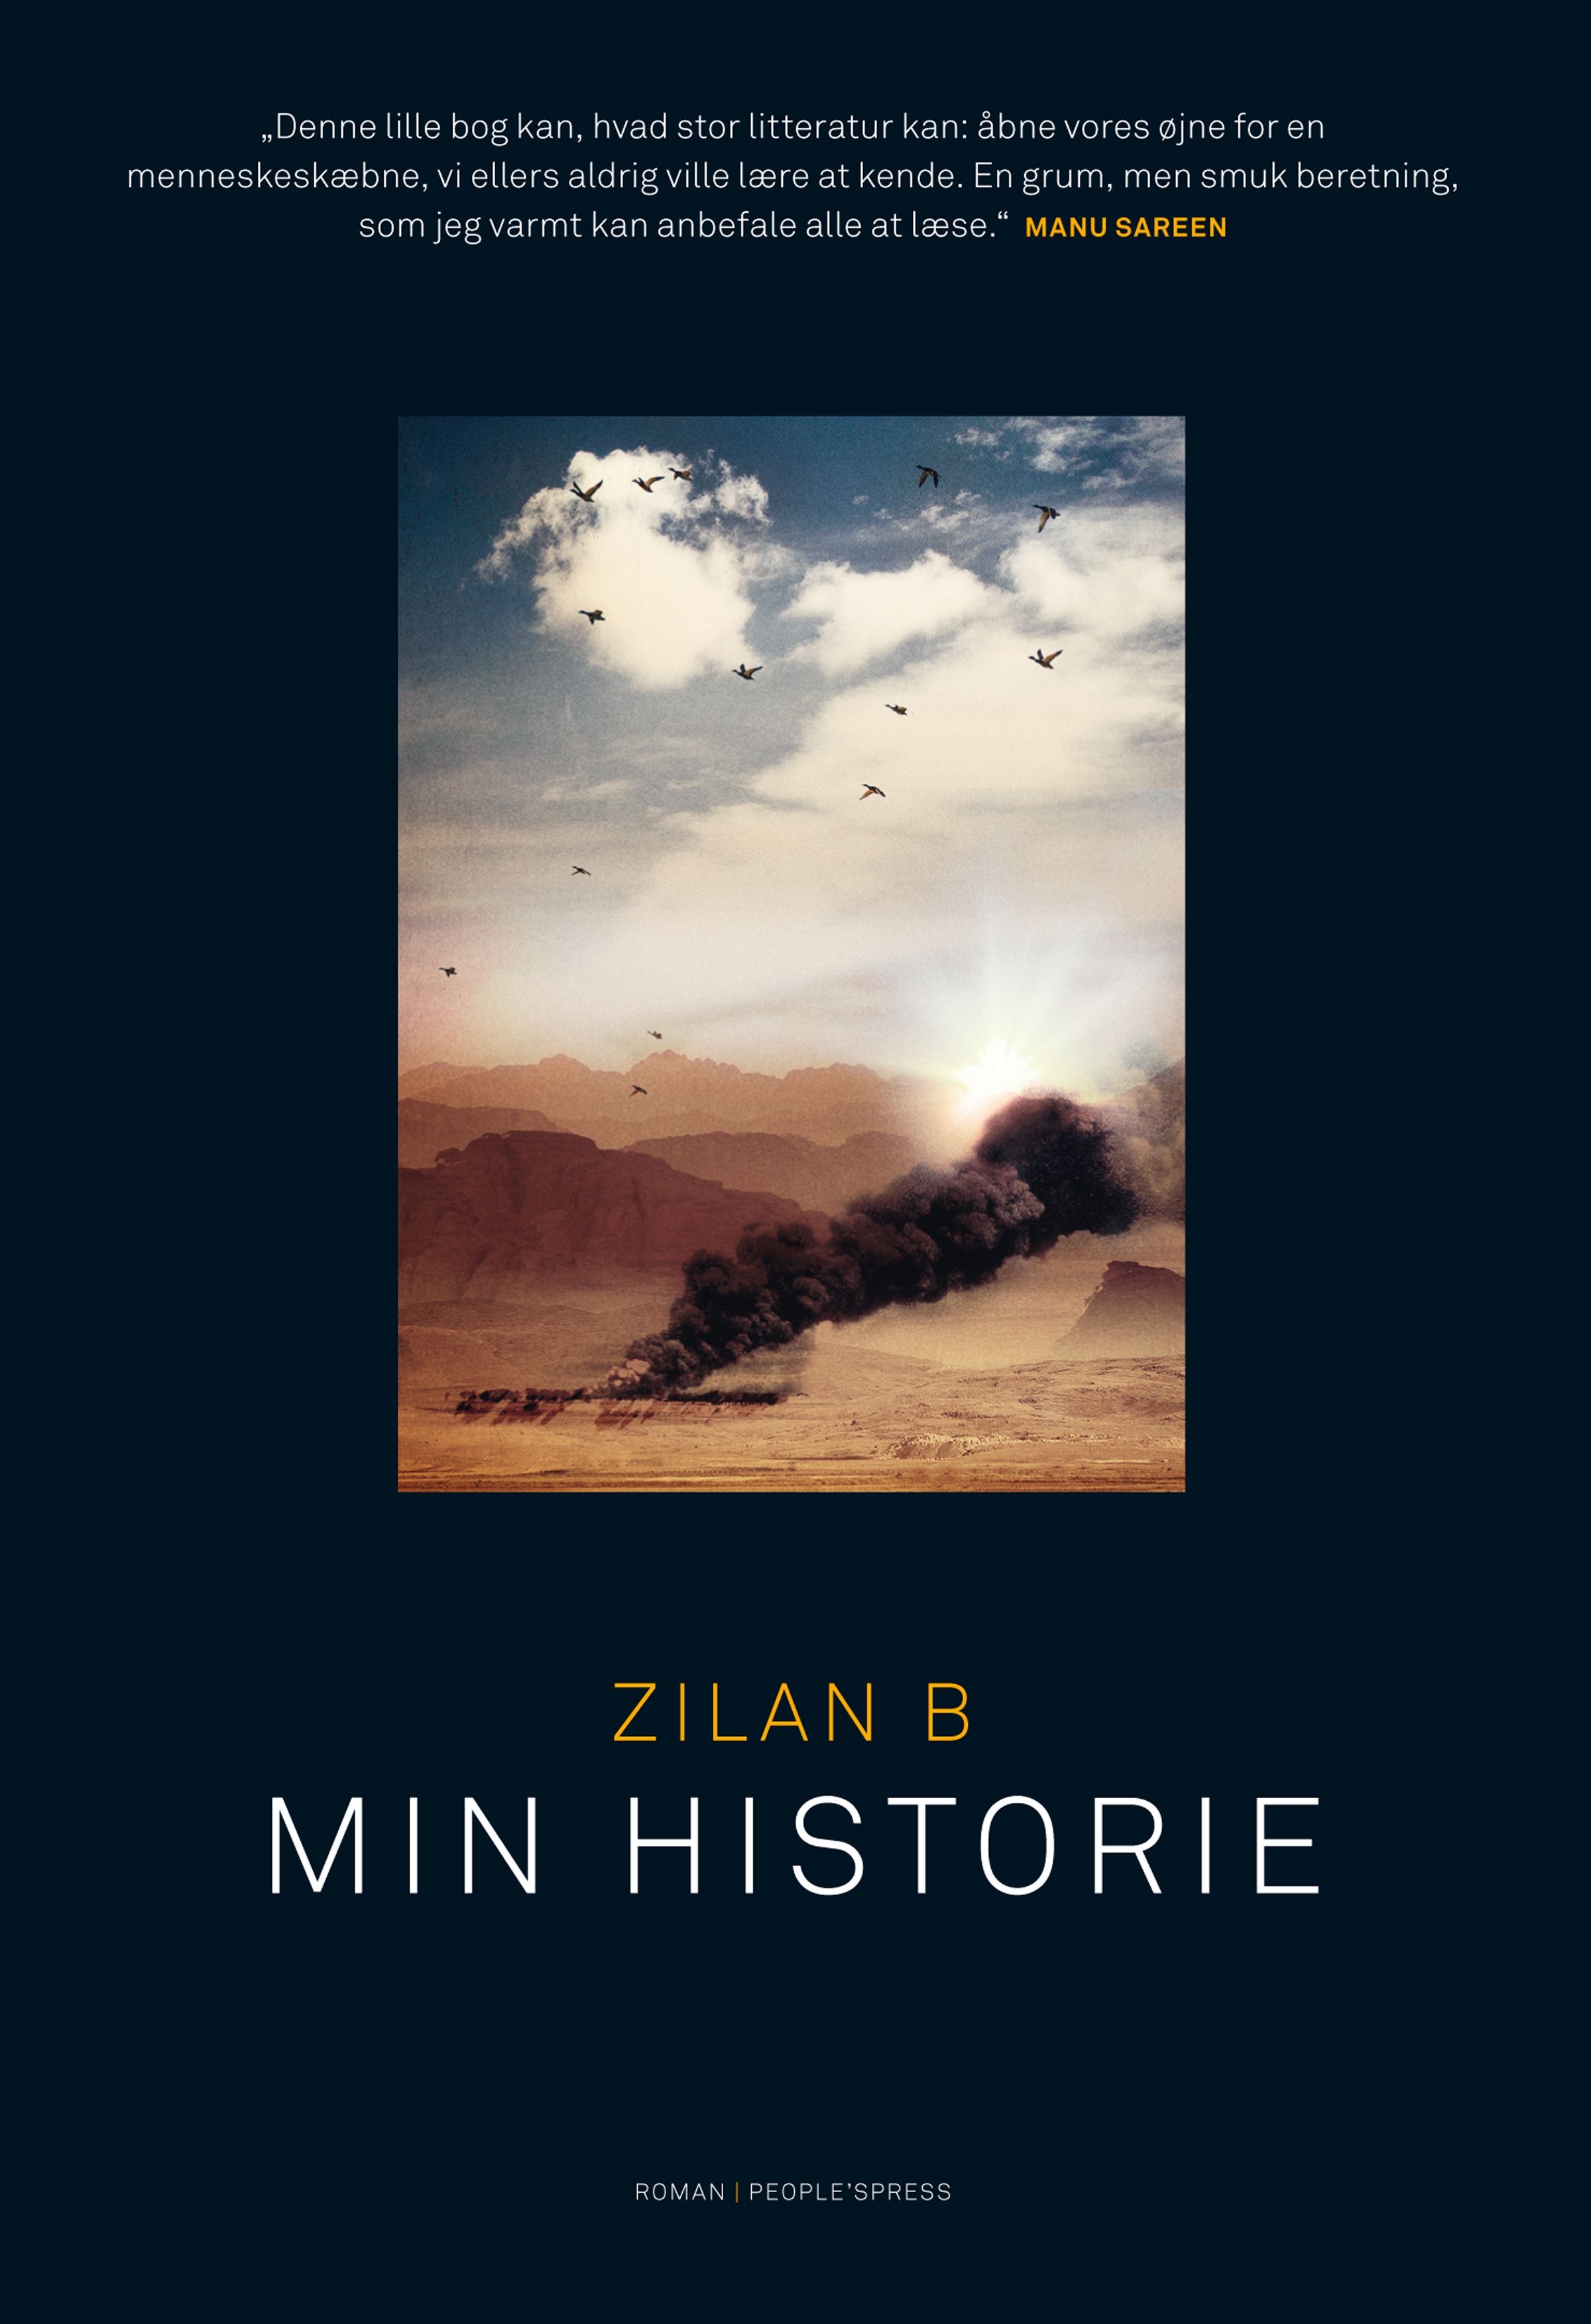 Min historie, e-bok av Zilan B